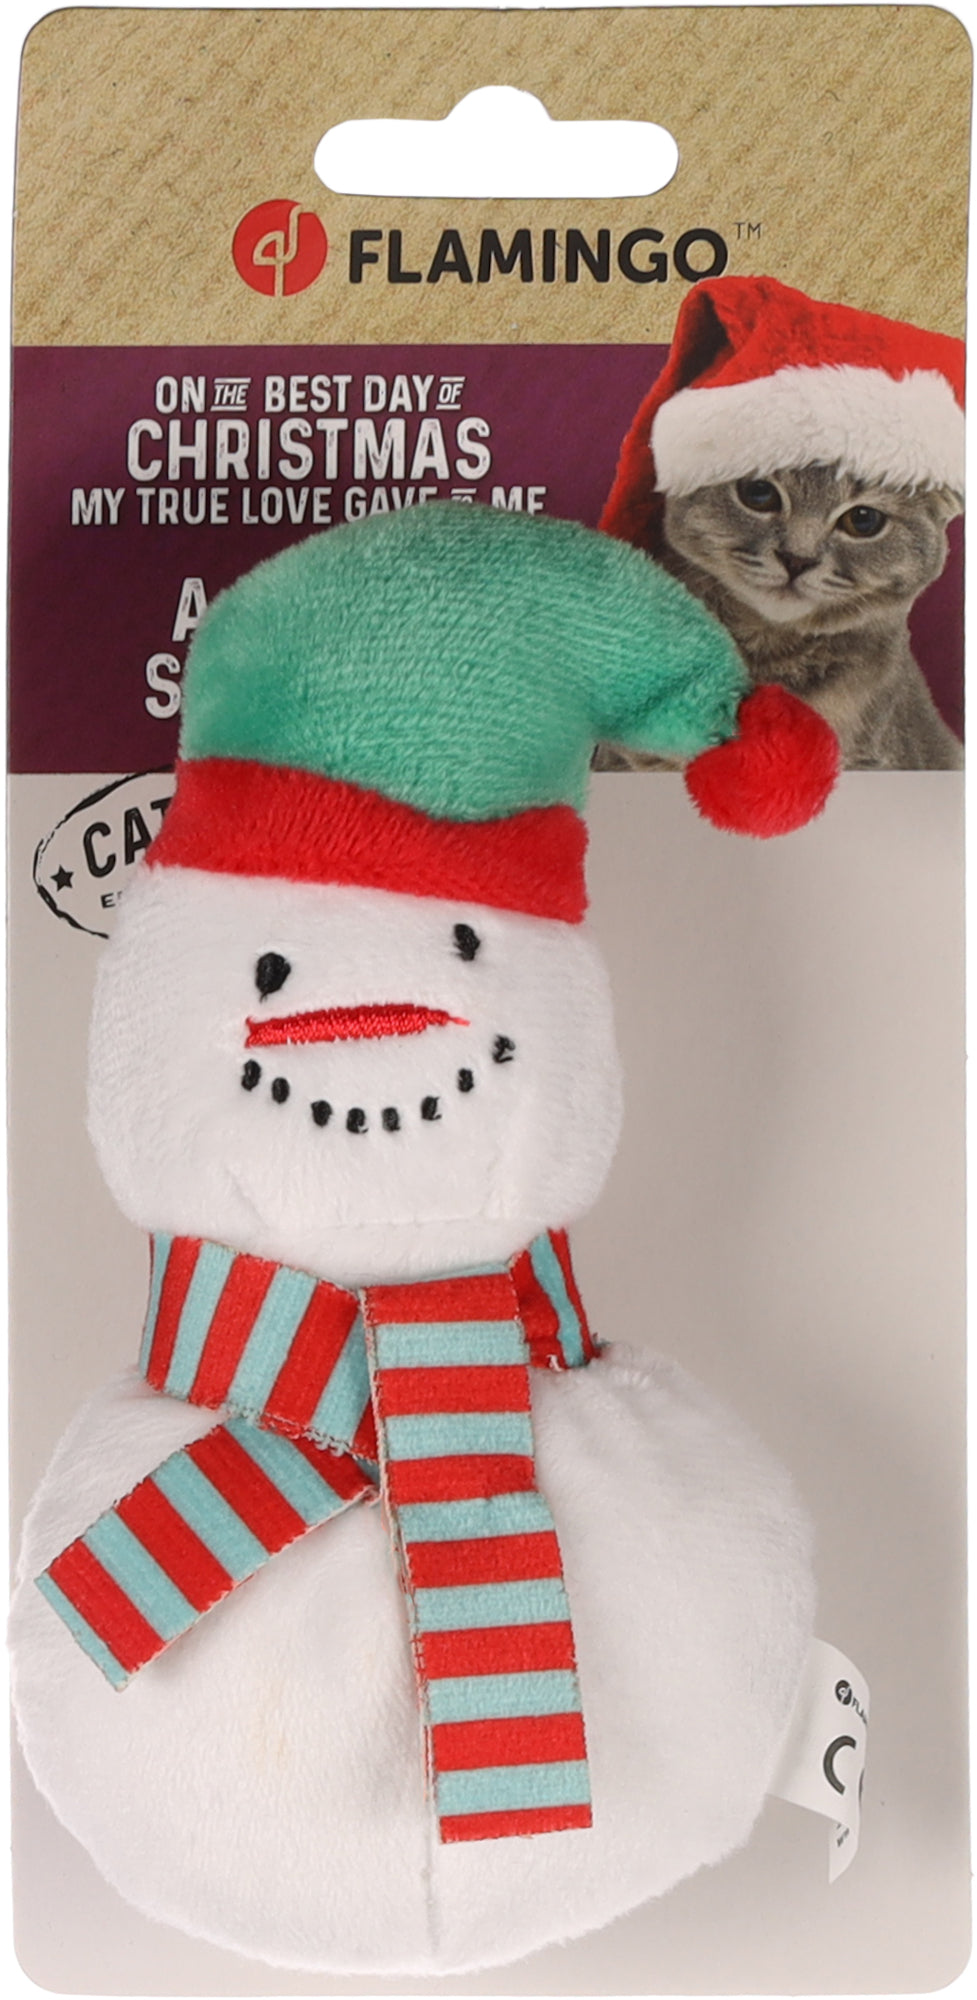 Kerst Knuffel Sneeuwpop kattenspeeltje - Huisdierplezier